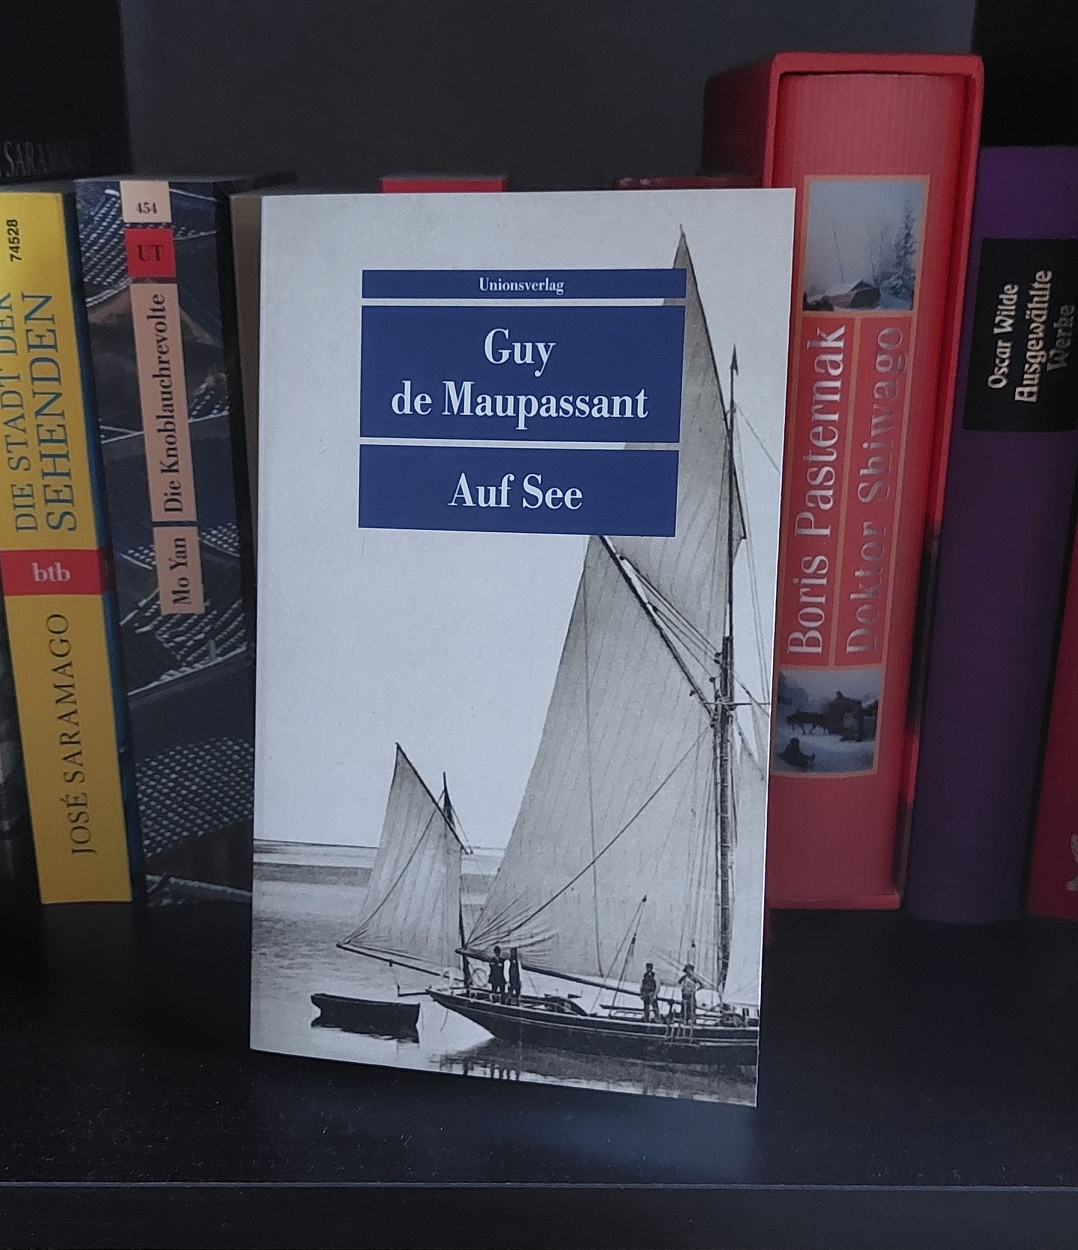 Auf See – Guy de Maupassant